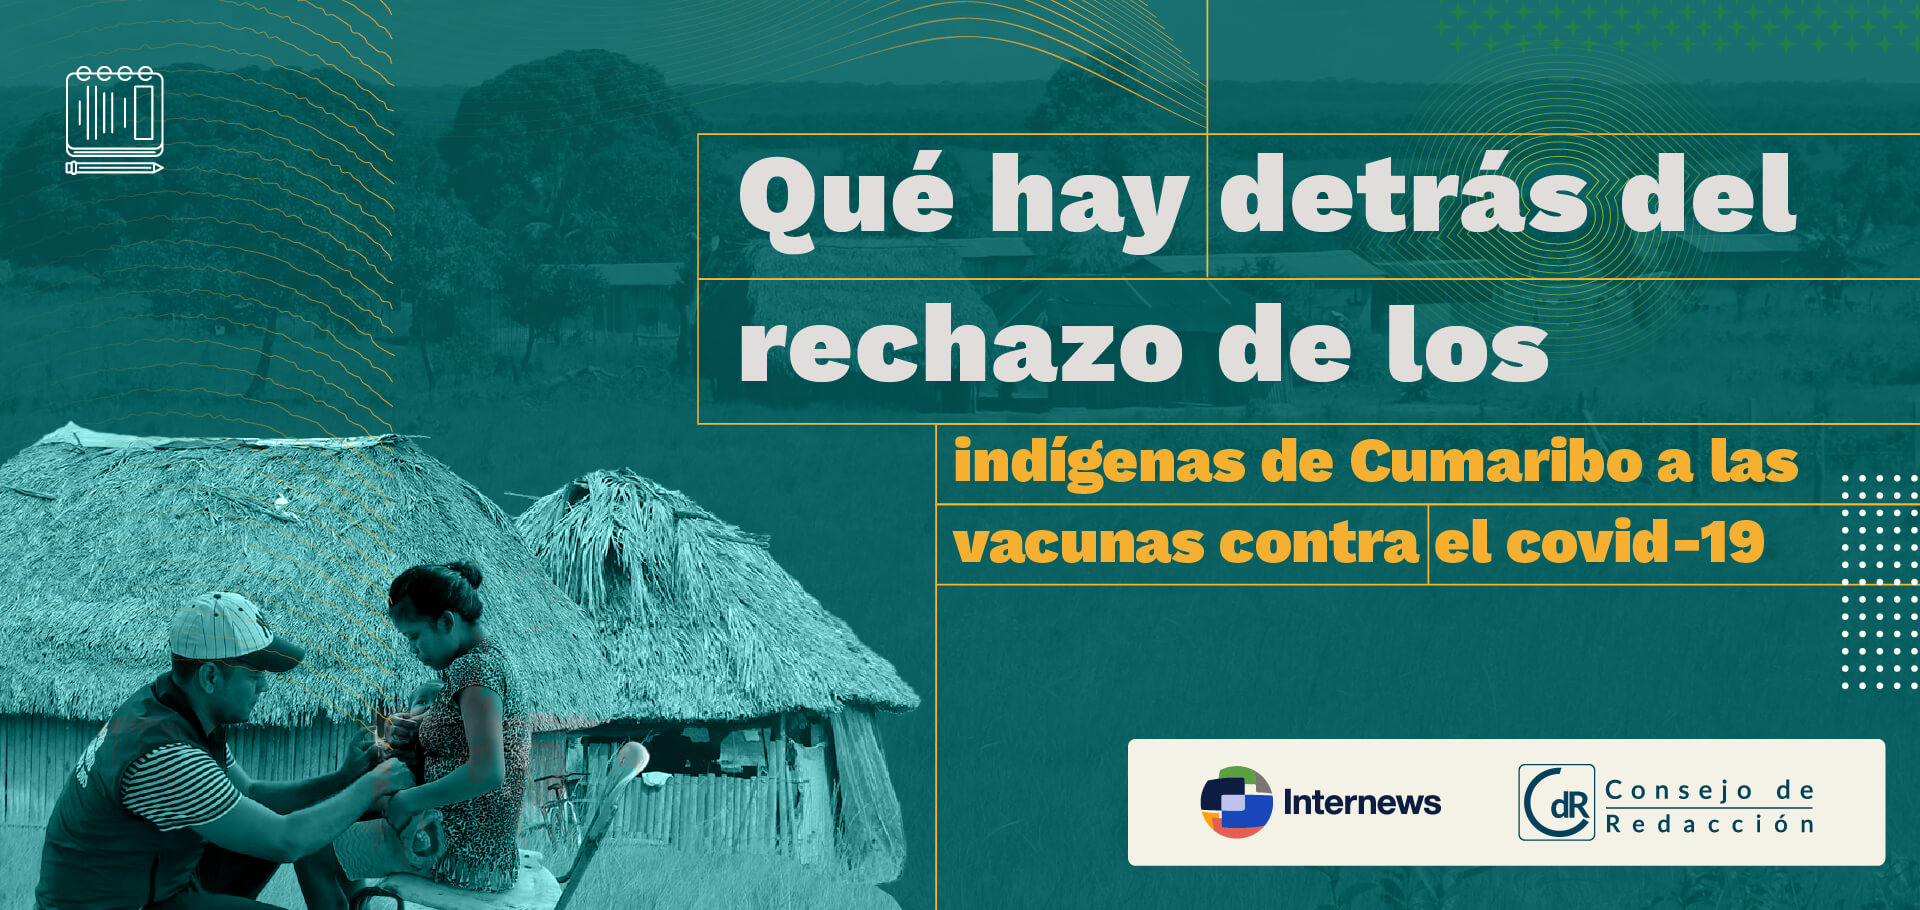 Qué hay detrás del rechazo de los indígenas de Cumaribo a las vacunas contra el covid-19